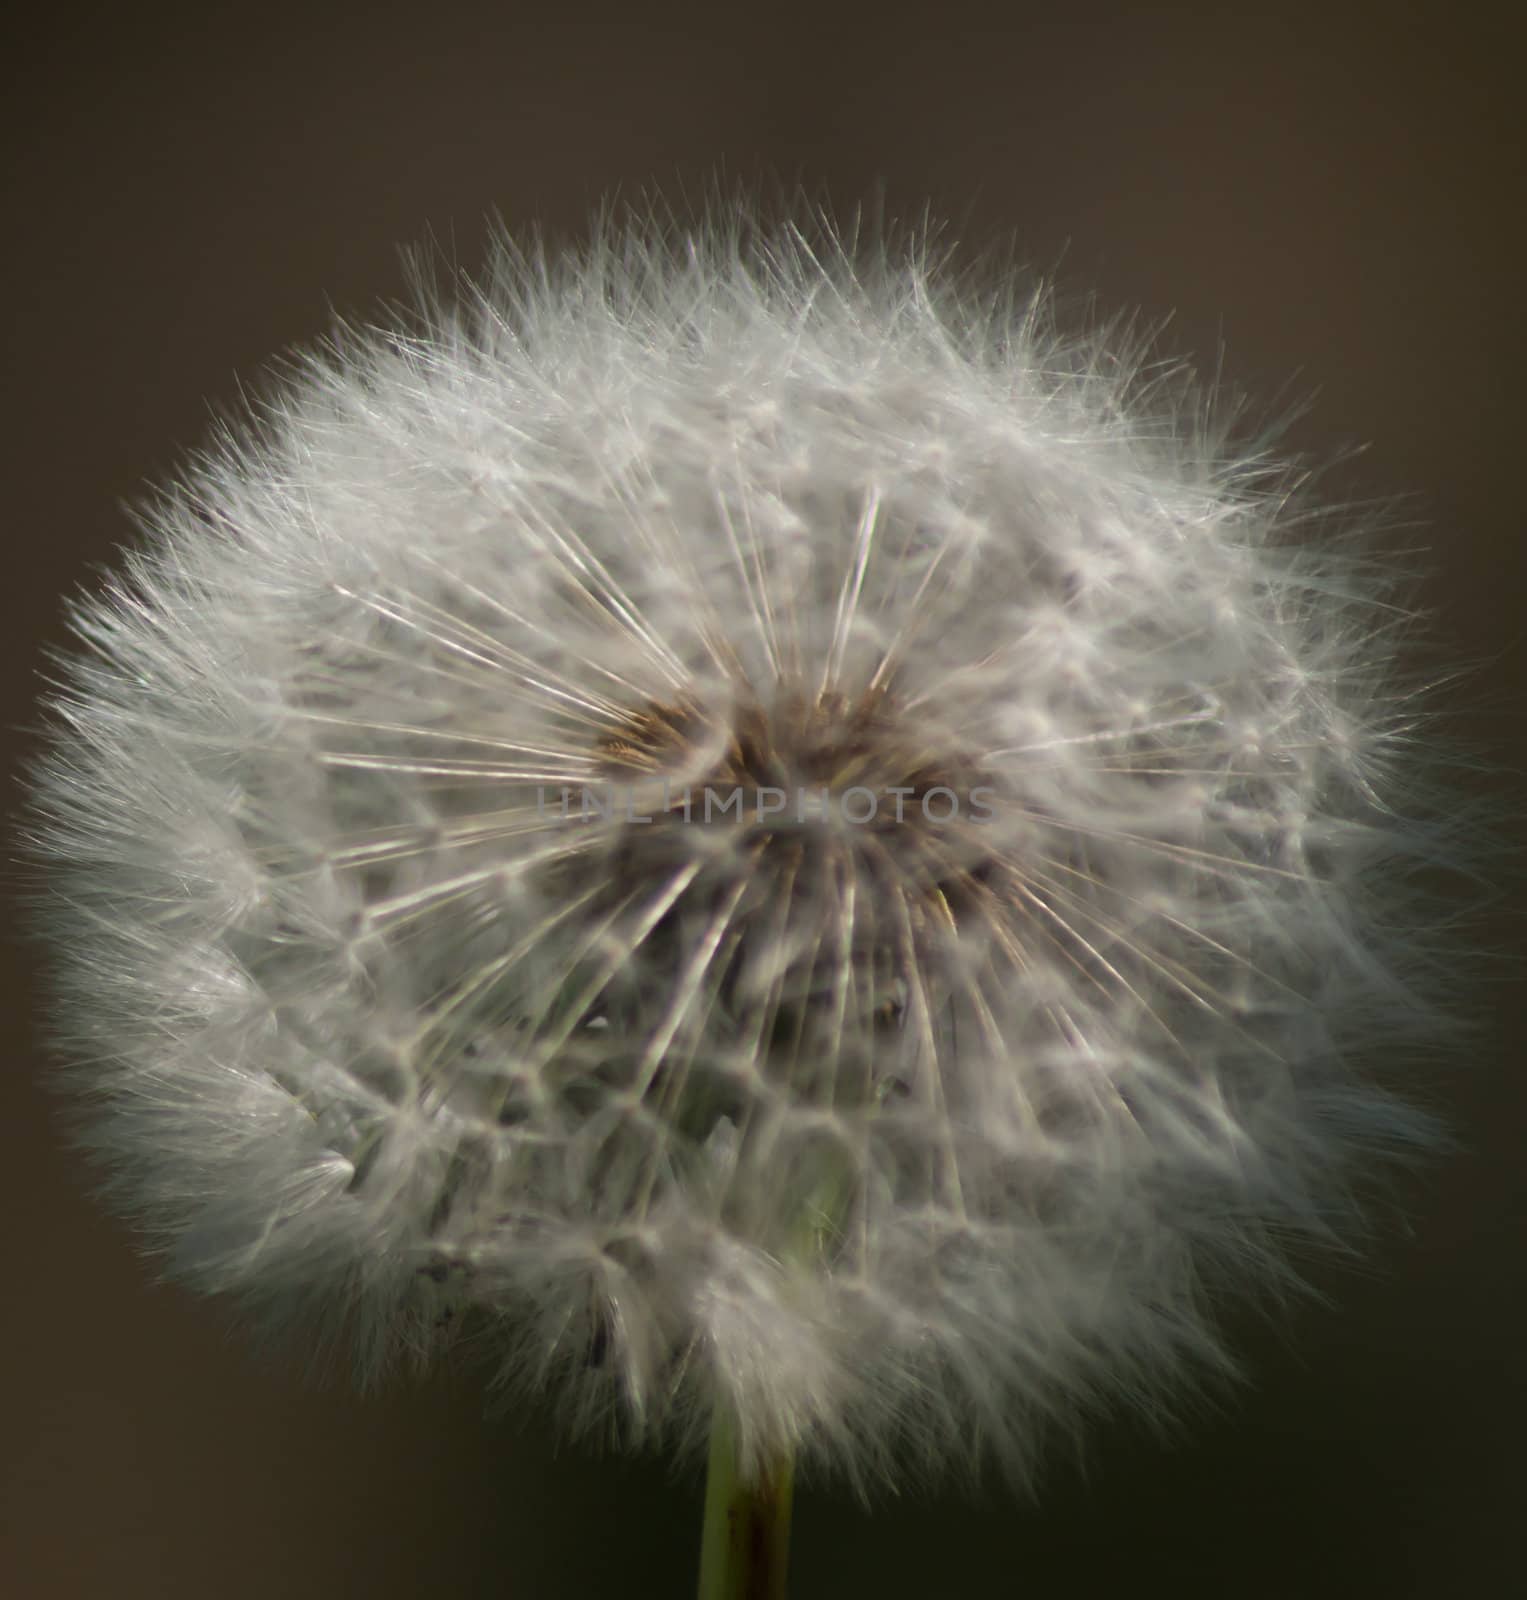 A delicate dandelion seed head